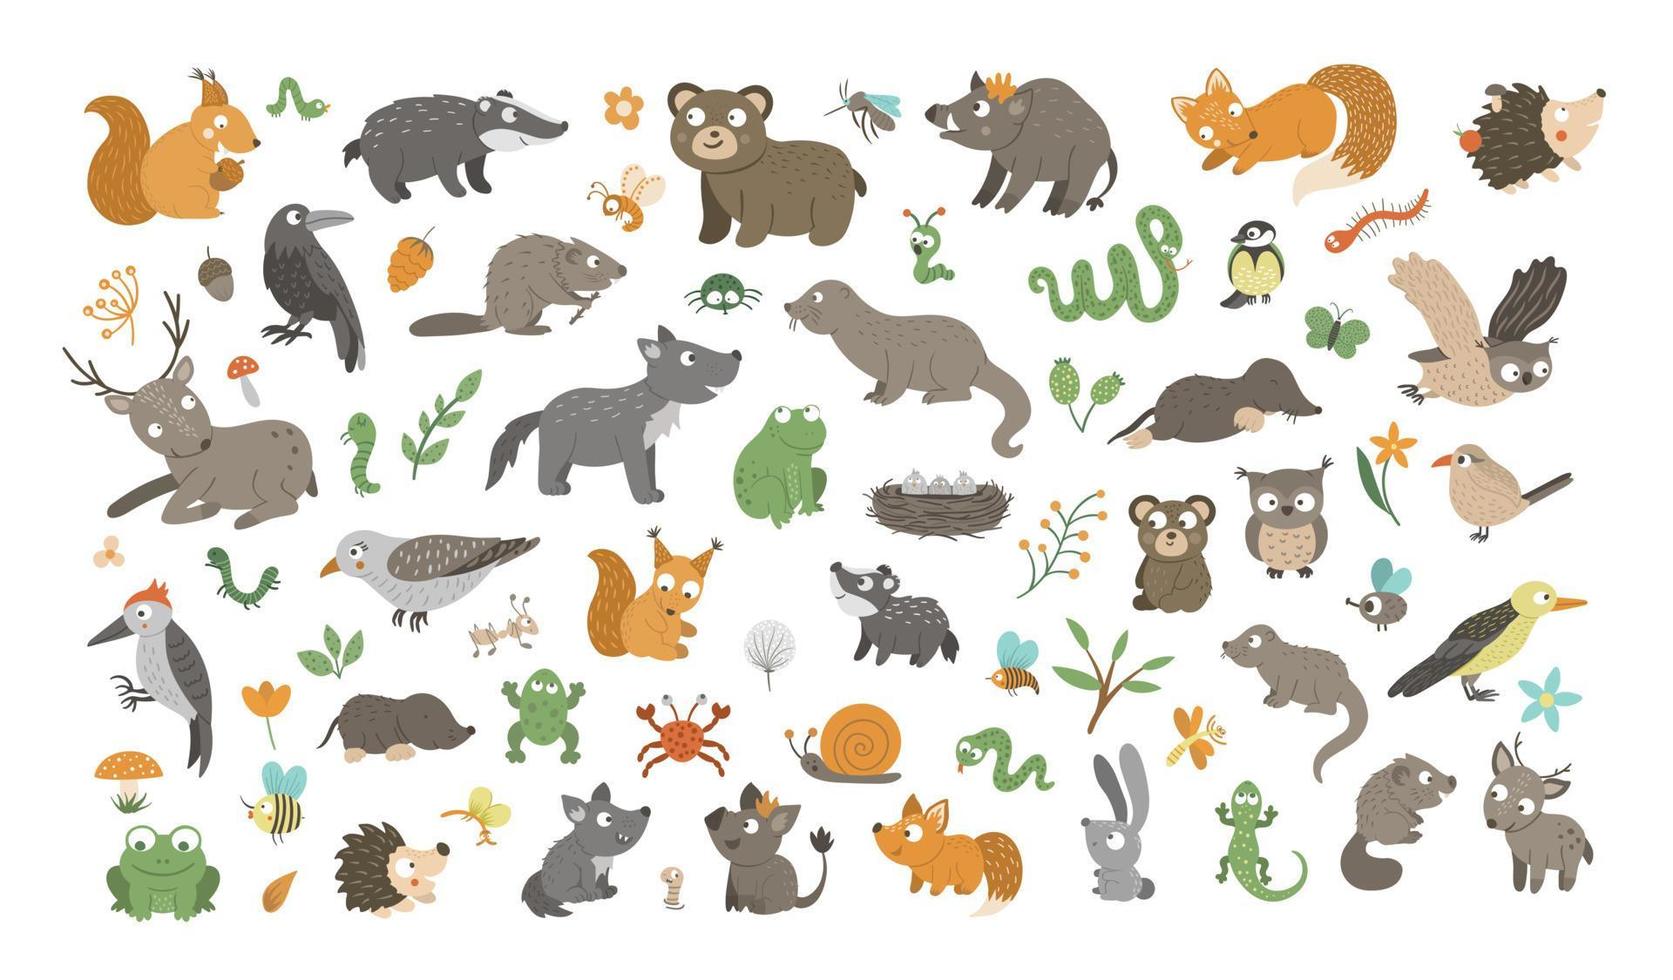 grande set di animali del bosco piatti disegnati a mano vettoriali, i loro bambini, uccelli, insetti e clipart della foresta. divertente collezione animalesca. simpatica illustrazione con orso, volpe, scoiattolo, cervo, riccio. vettore